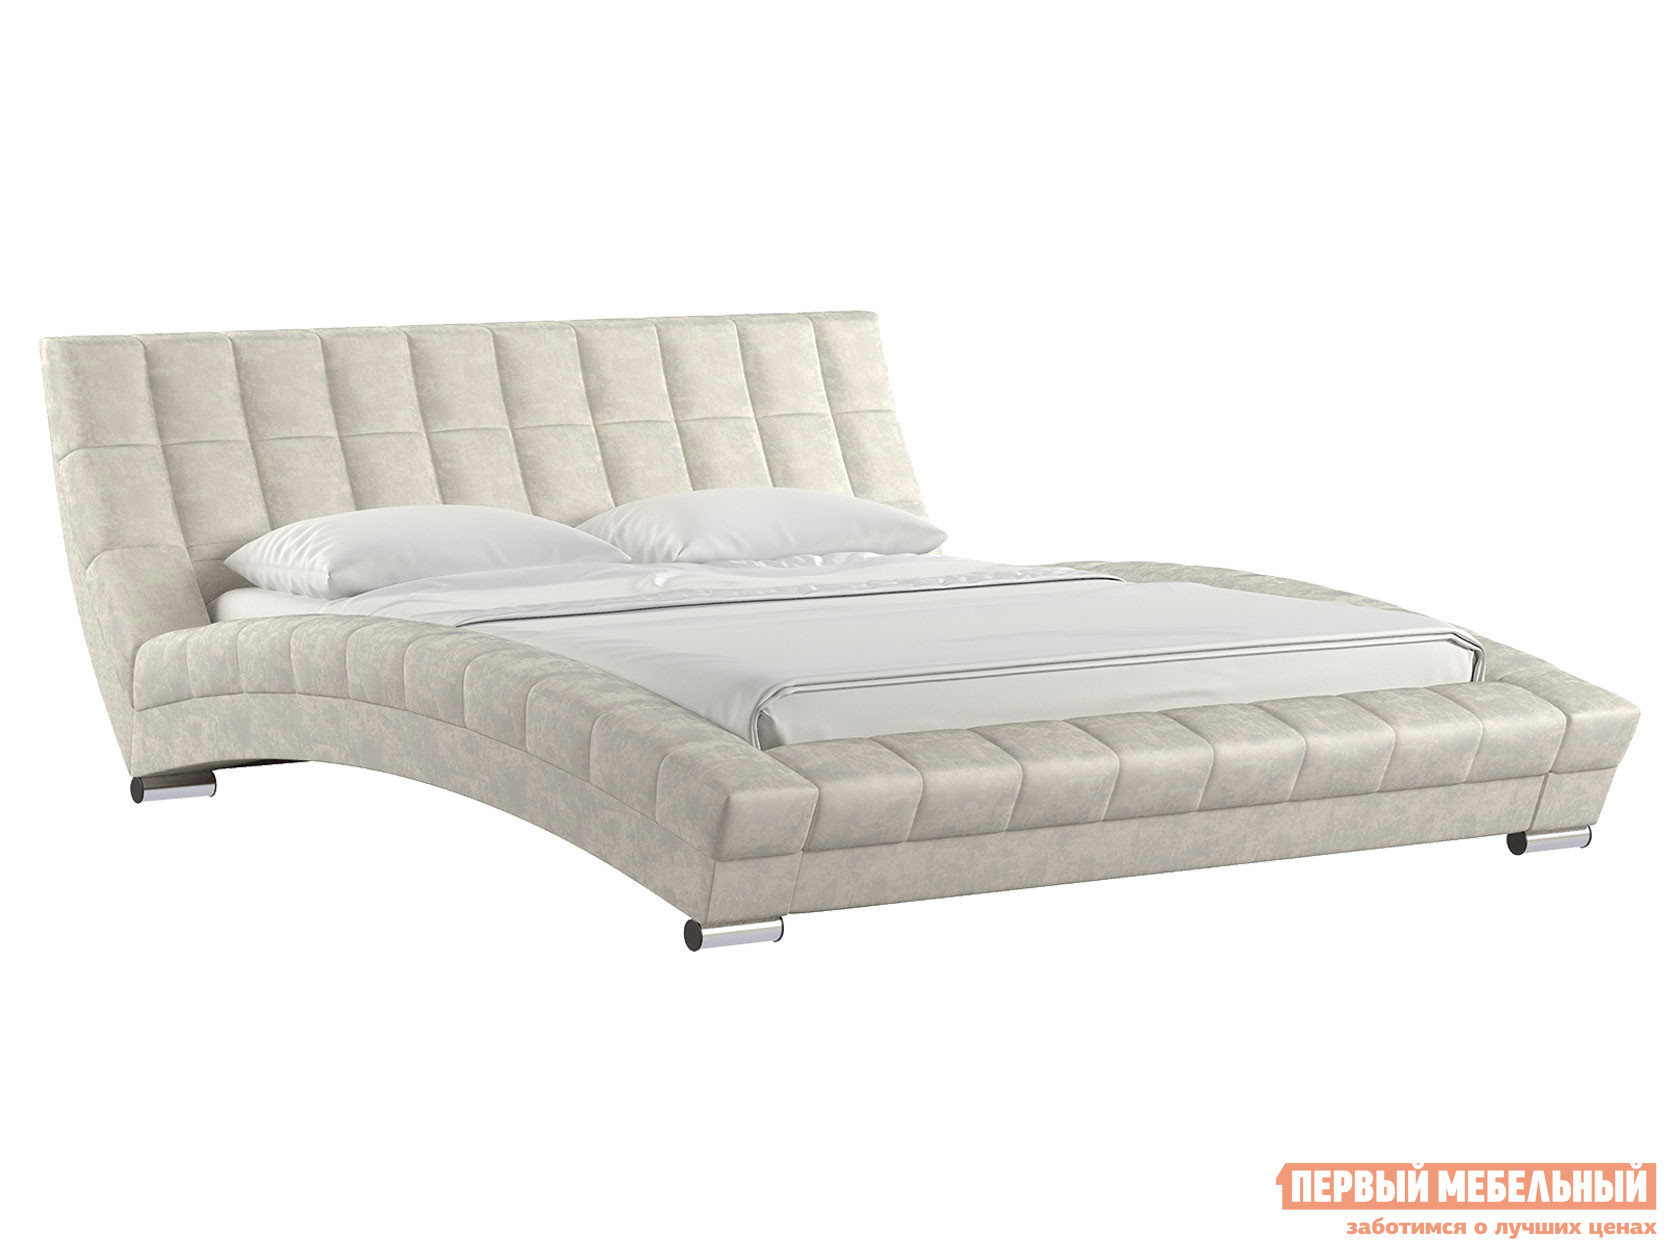 Двуспальная кровать  Оливия Люкс Серо-бежевый, велюр, 160х200 см